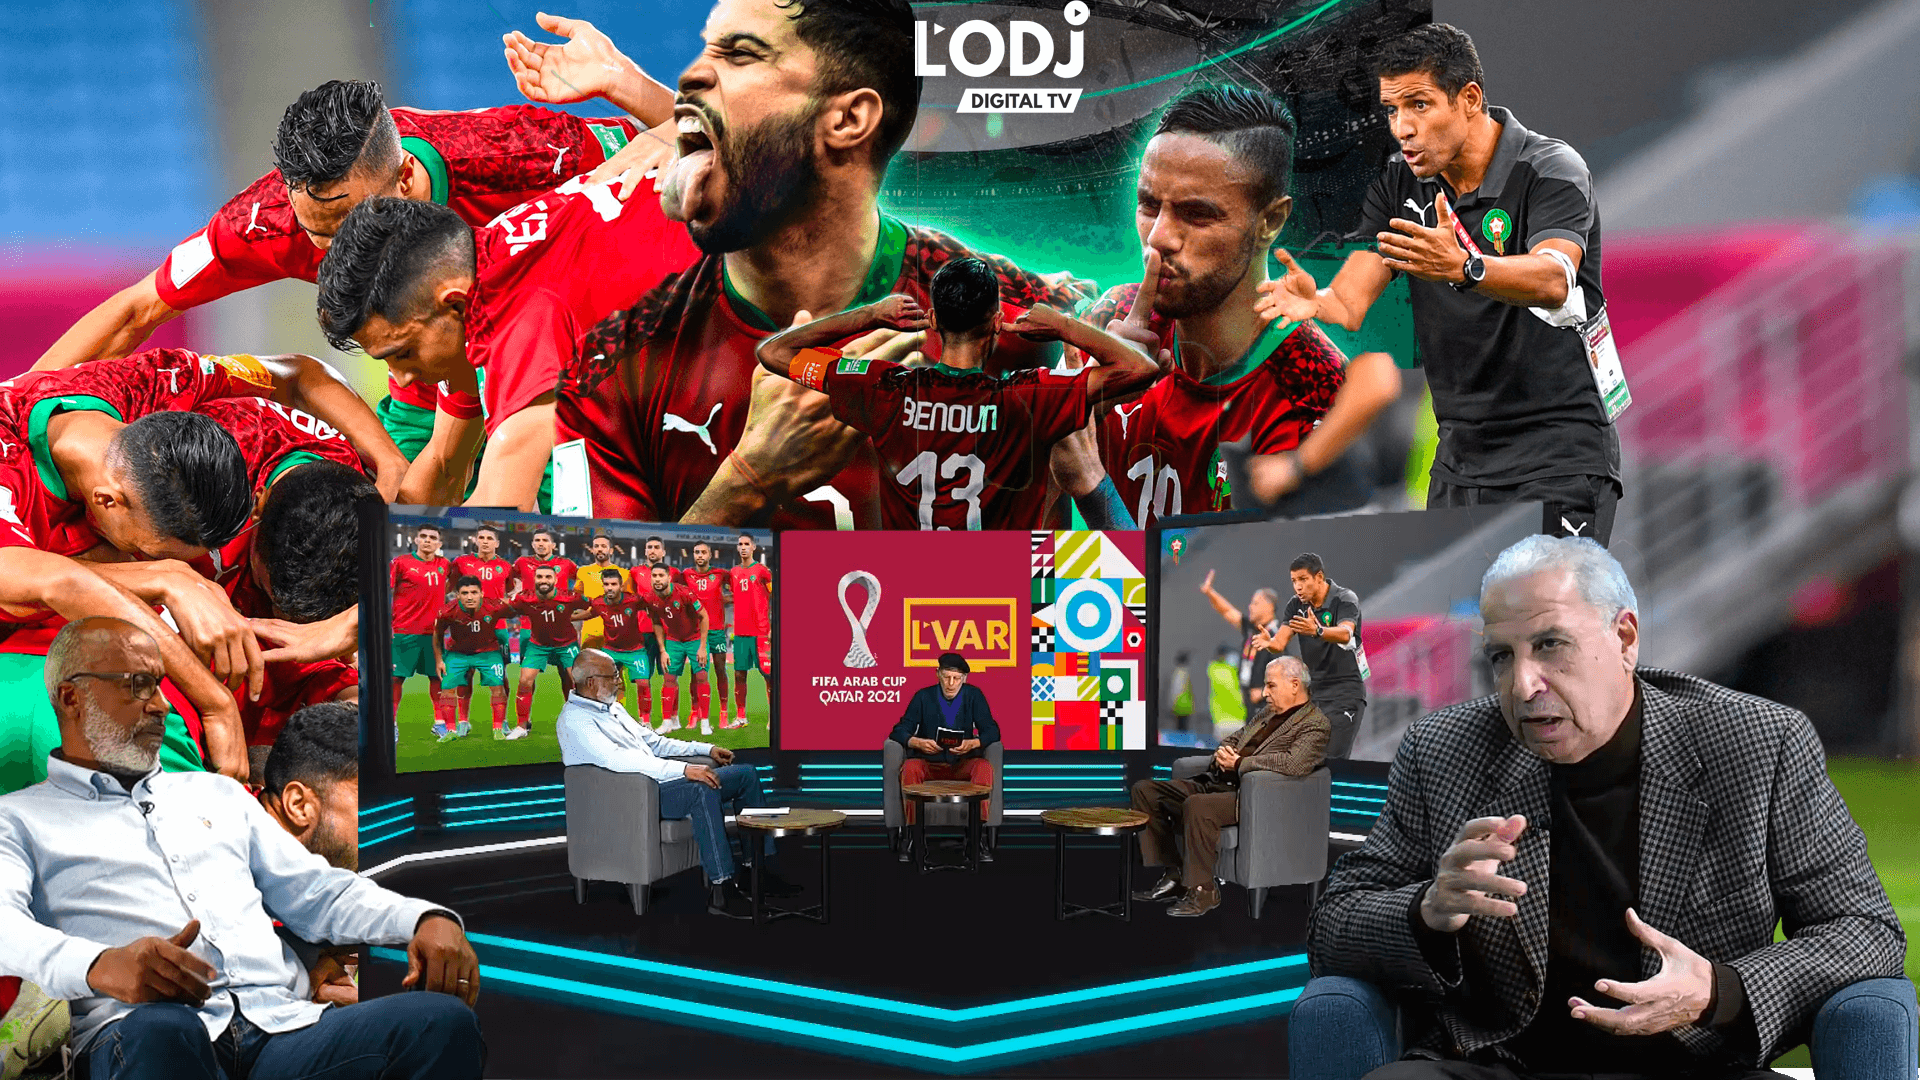 Emission "L'VAR" : Coupe arabe sans faute pour le Maroc